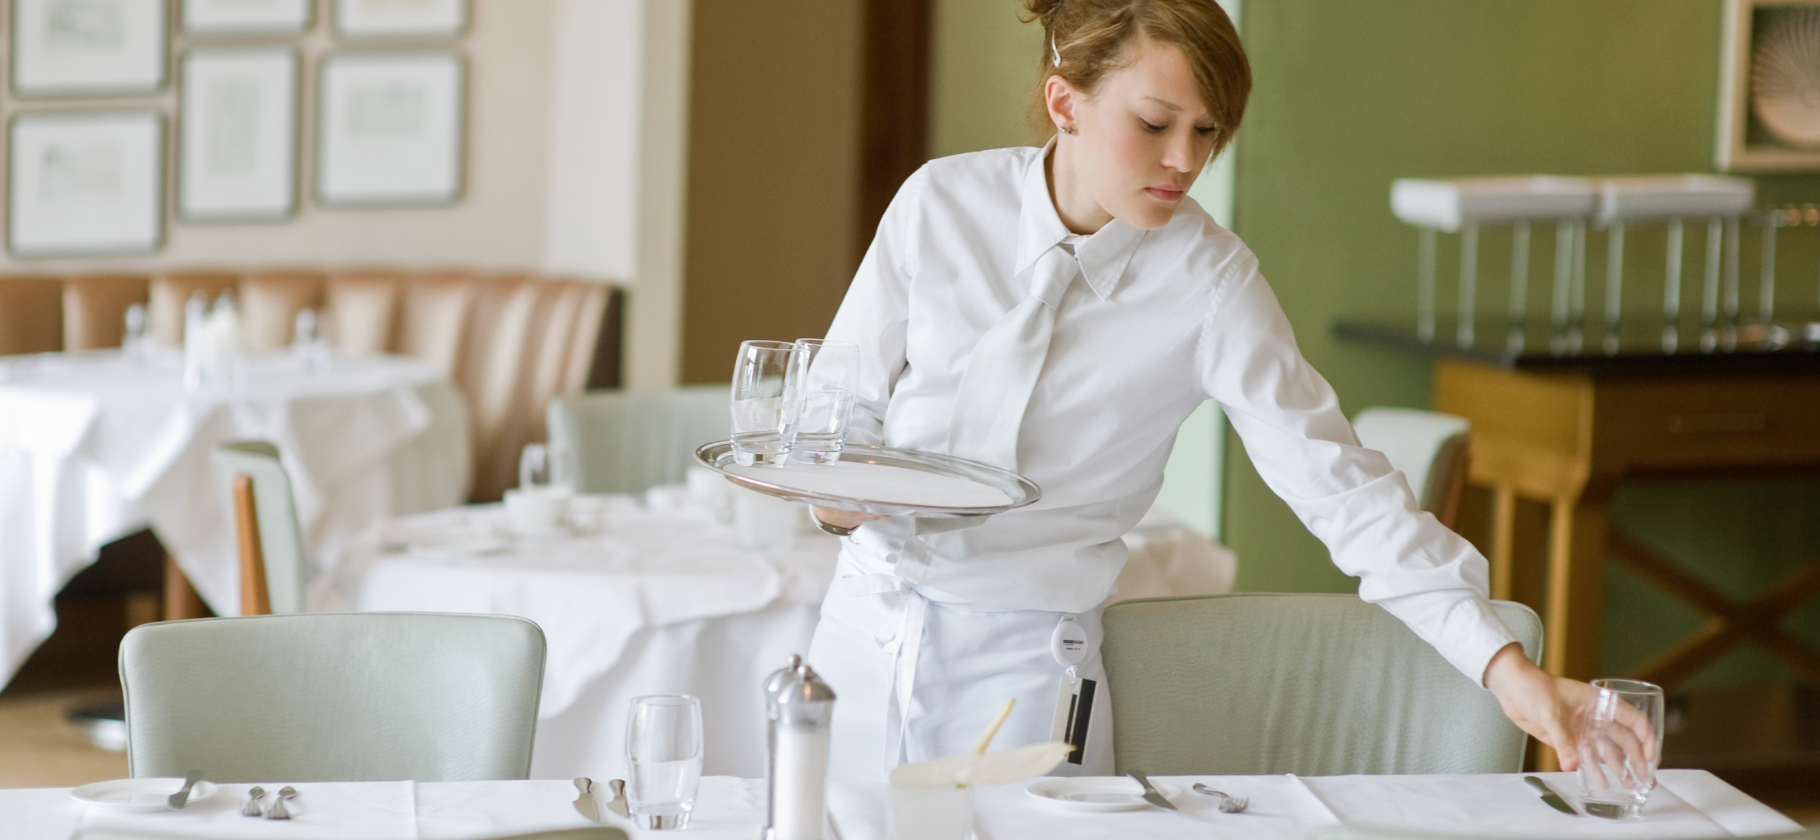 9 вещей в рестора­нах, которые бесят больше всего